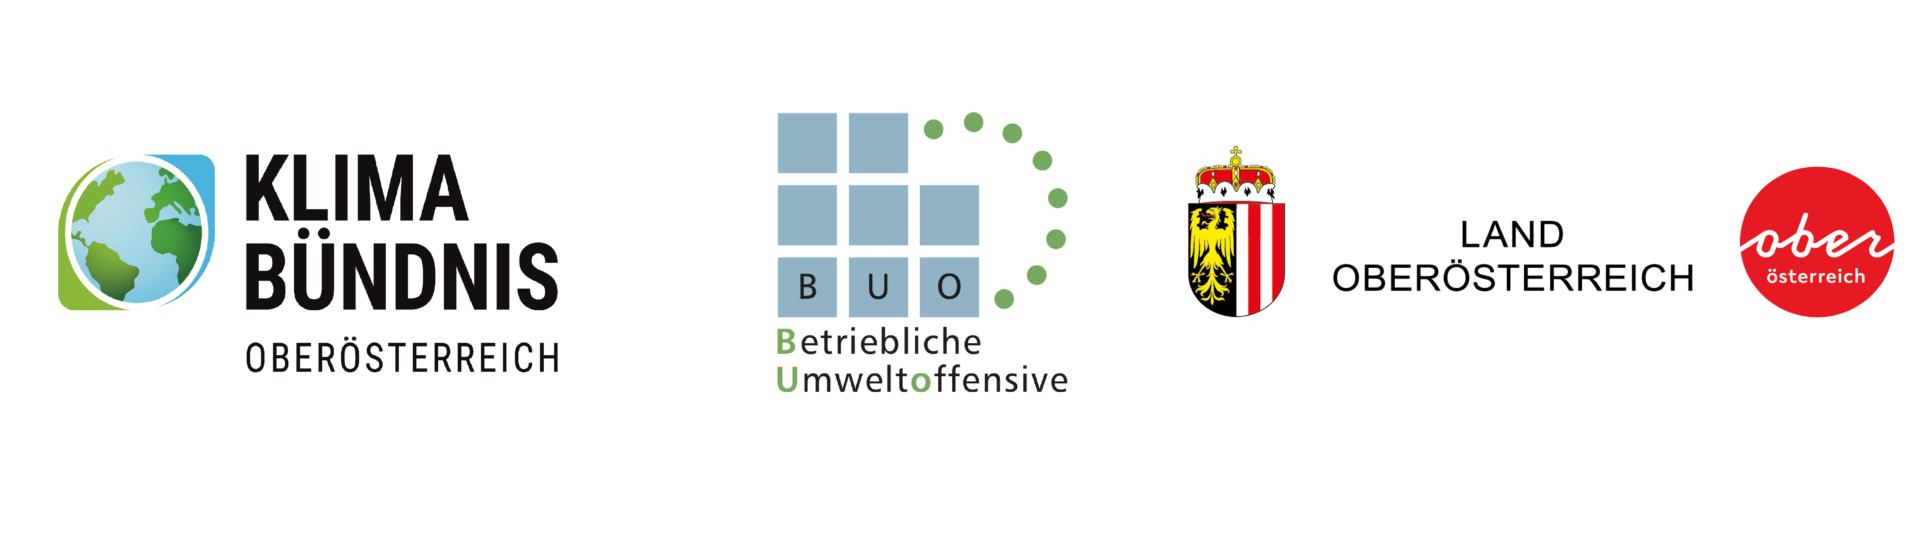 Logos von Klimabündnis, Betriebliche Umweltoffensive (BUO) und dem Land Oberösterrreich